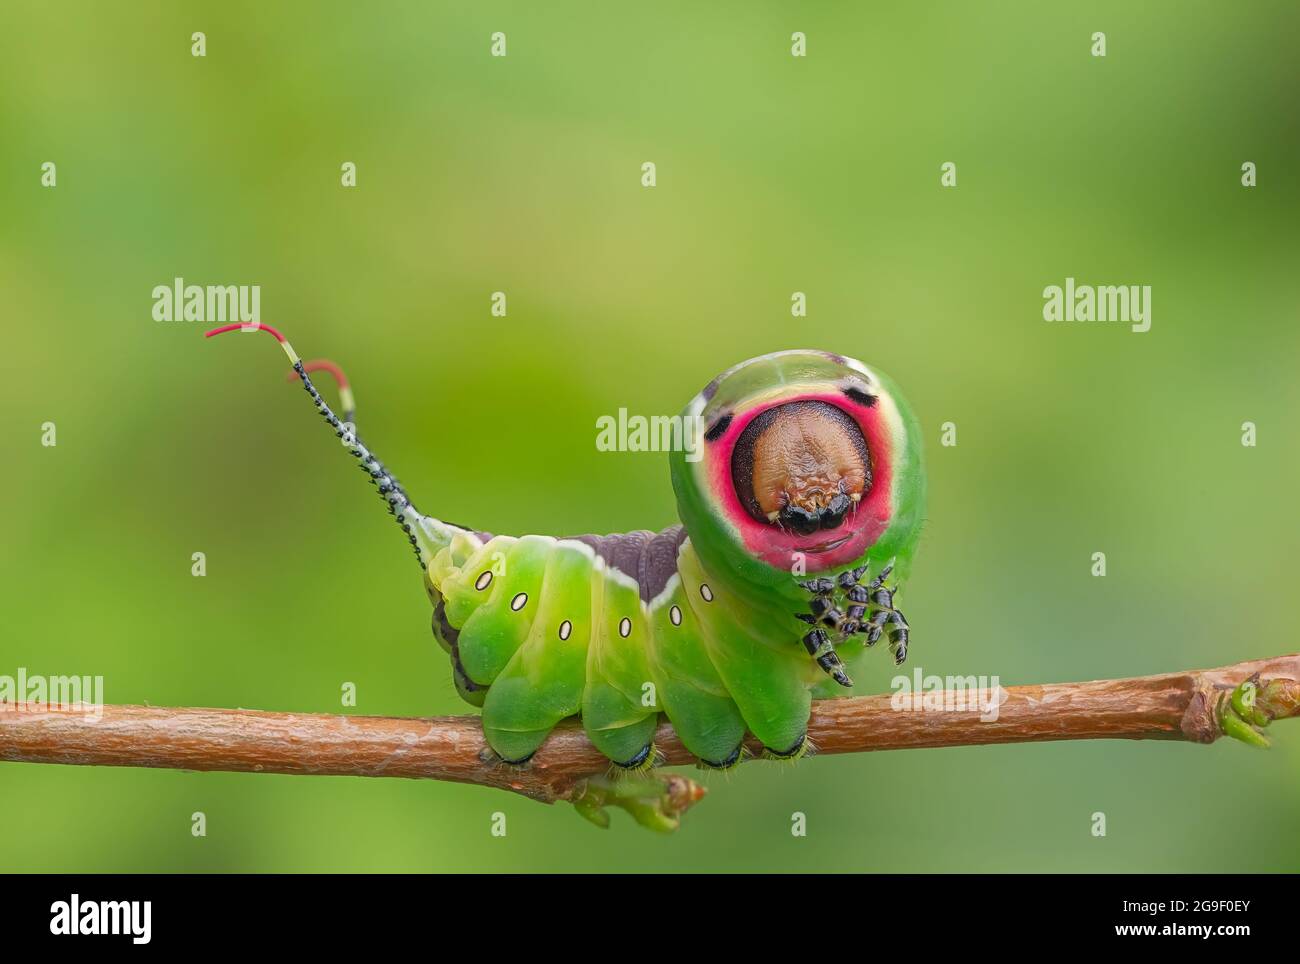 Caterpillar frightening pose, unique animal behaviour Stock Photo - Alamy